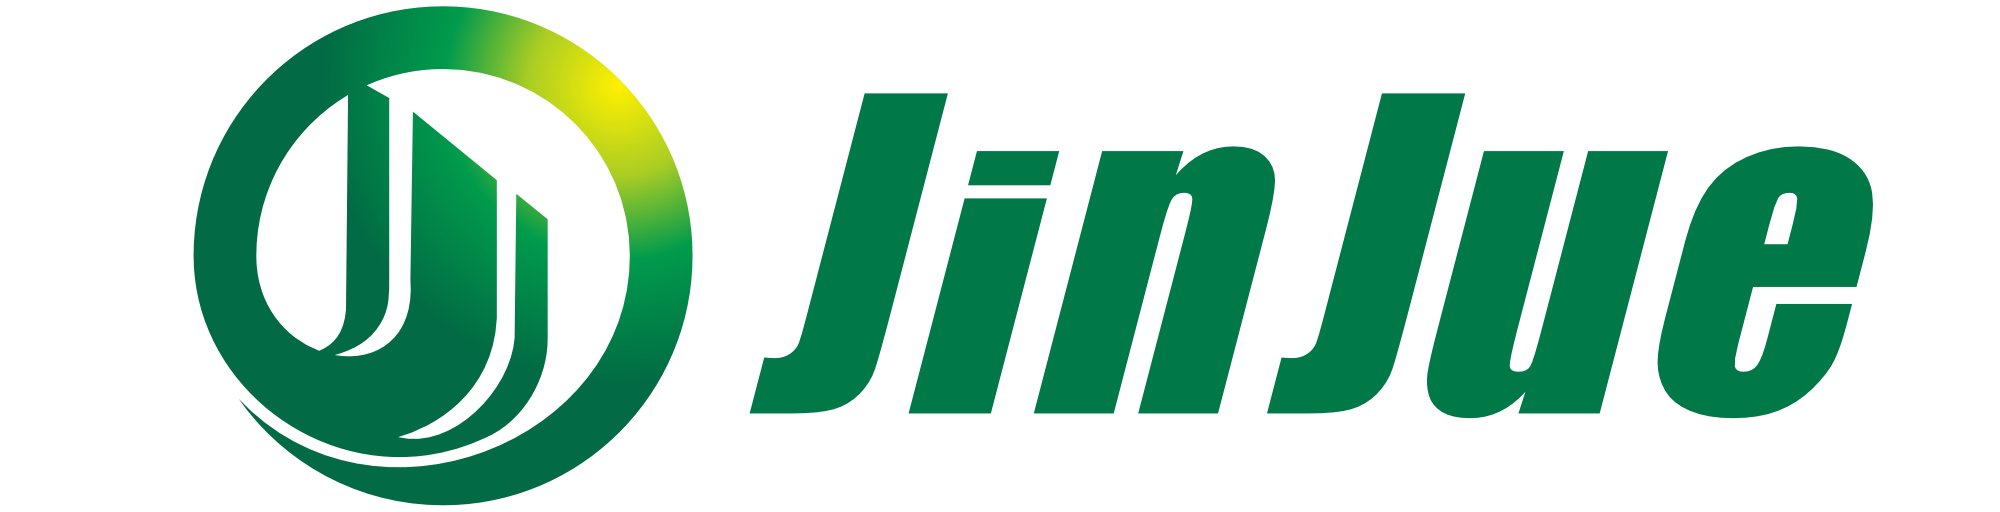 Jinjue filtro Co., Ltd